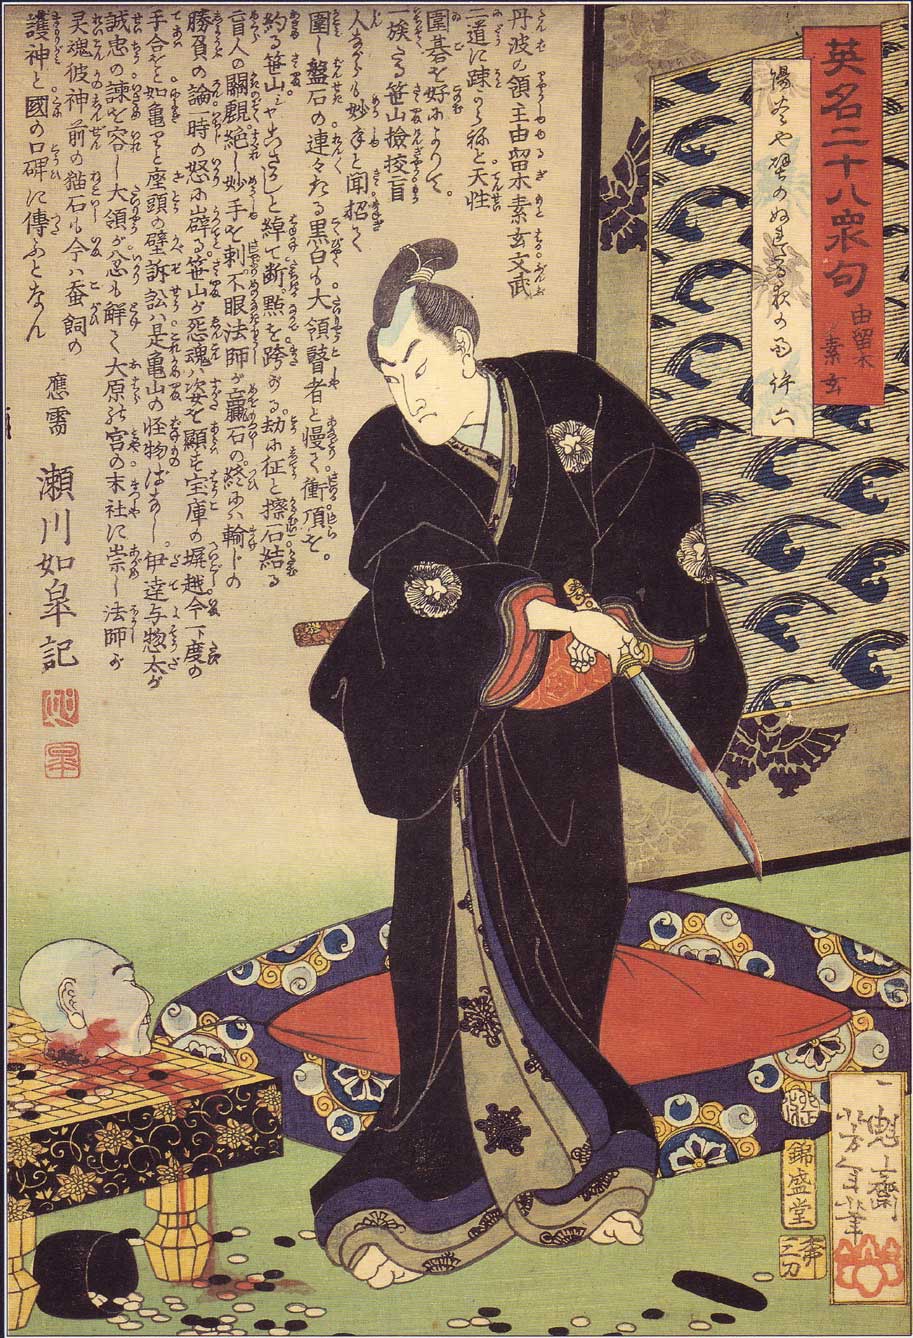 Tsukioka Yoshitoshi, Yurugi Sogen with a head on a go board